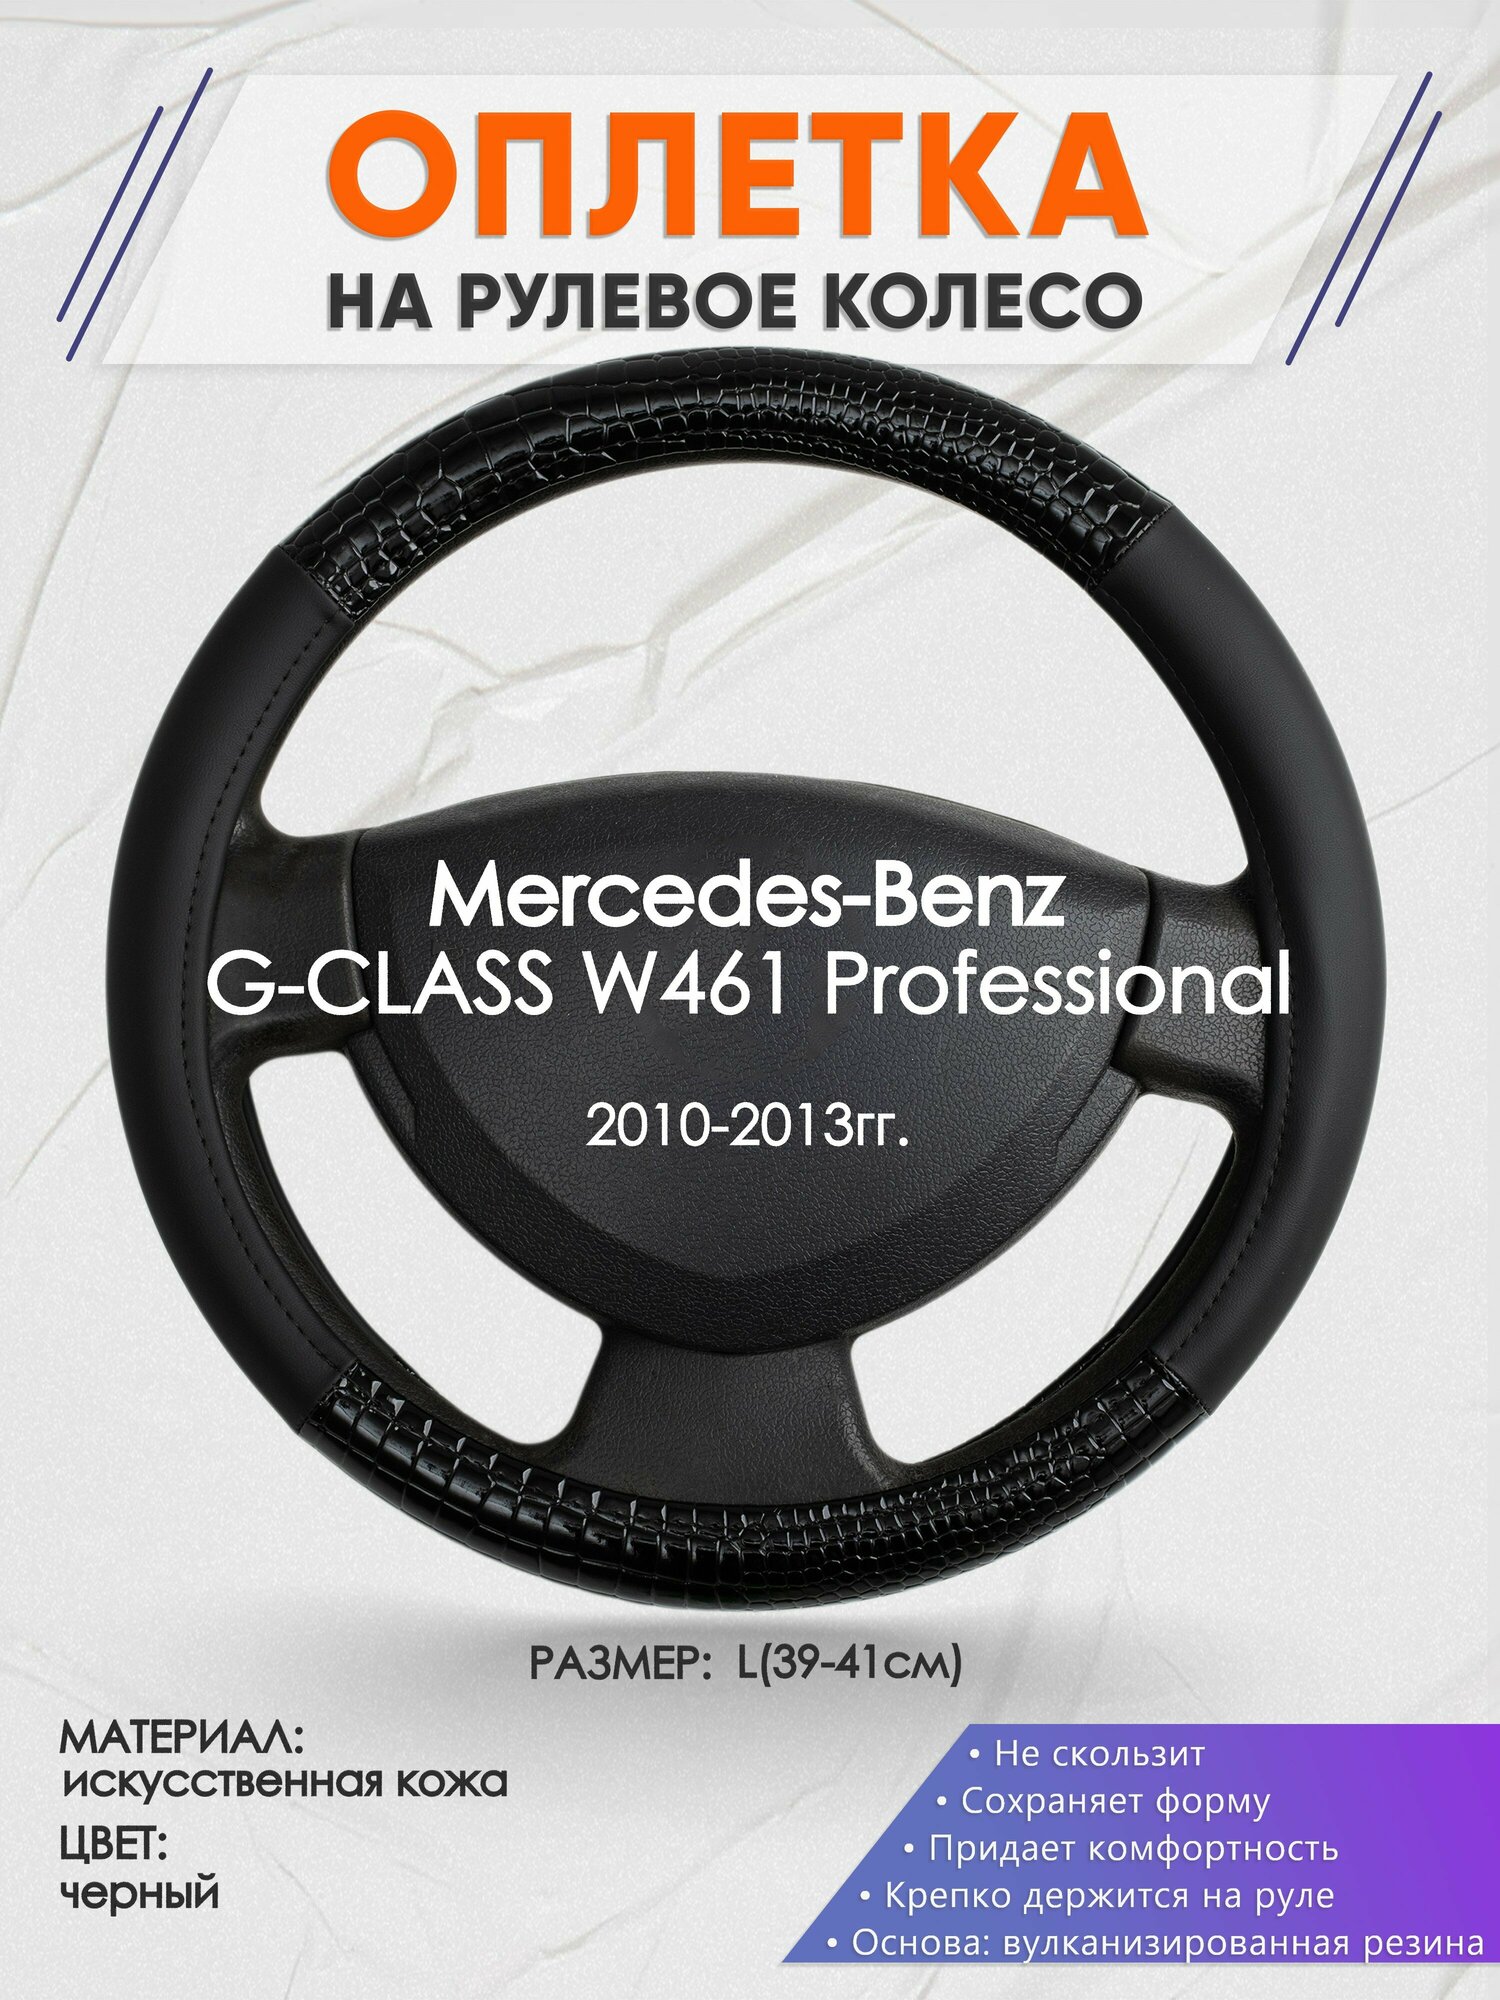 Оплетка на руль для Mercedes-Benz G-CLASS W461 Professional(Мерседес Бенц Г Класс) 2010-2013, L(39-41см), Искусственная кожа 83